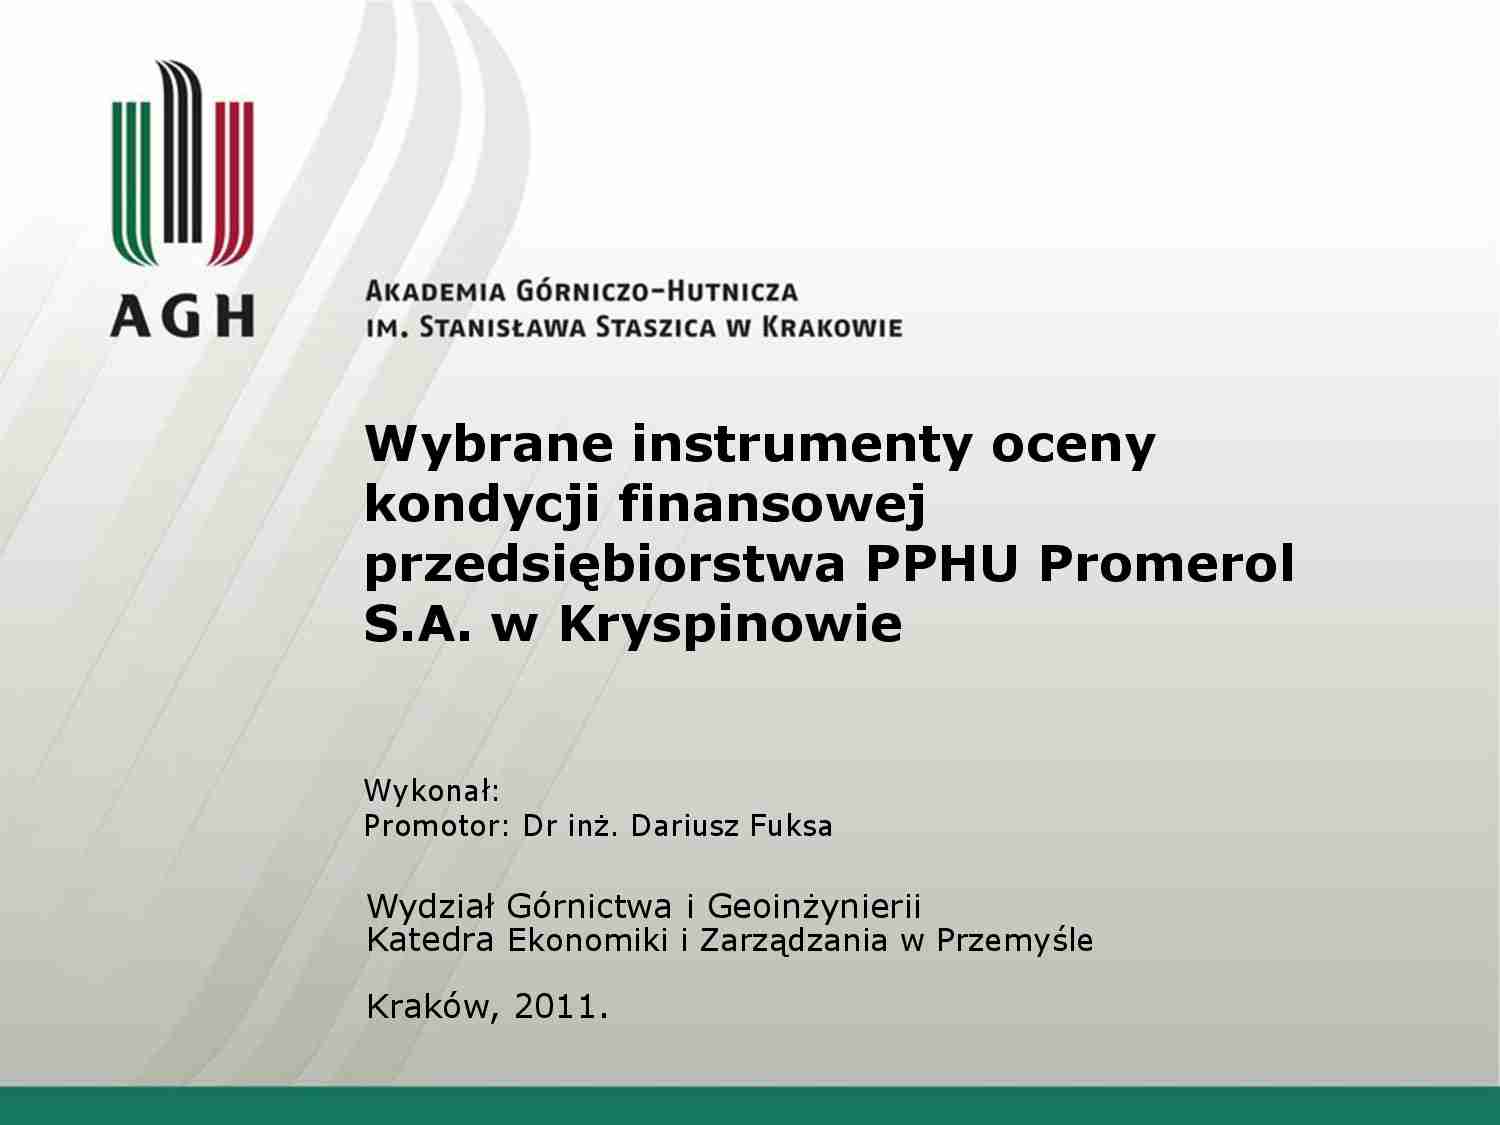 Wybrane instrumenty oceny kondycji finansowej przedsi_biorstwa PPHU Promerol S.A. w Kryspinowie - prezentacja - strona 1